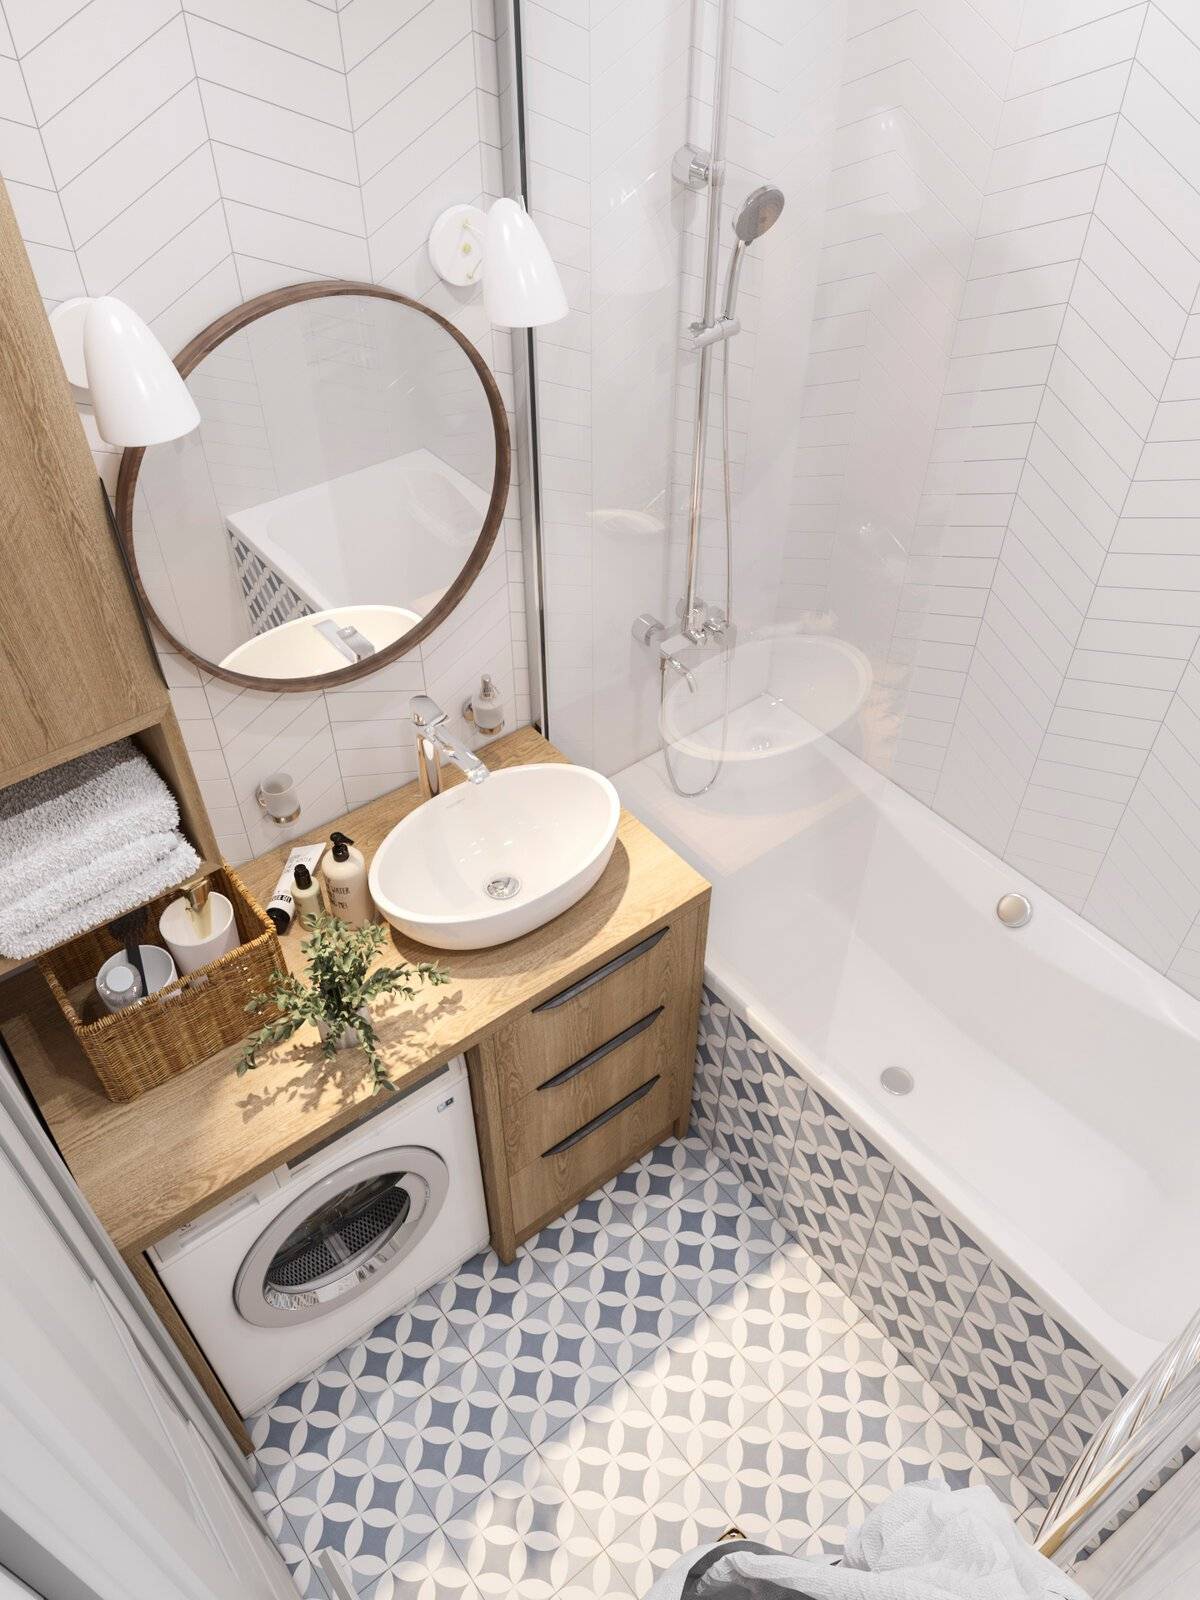 Дизайн маленькой ванной комнаты: идеи ремонта и планировки с туалетом и без туалета